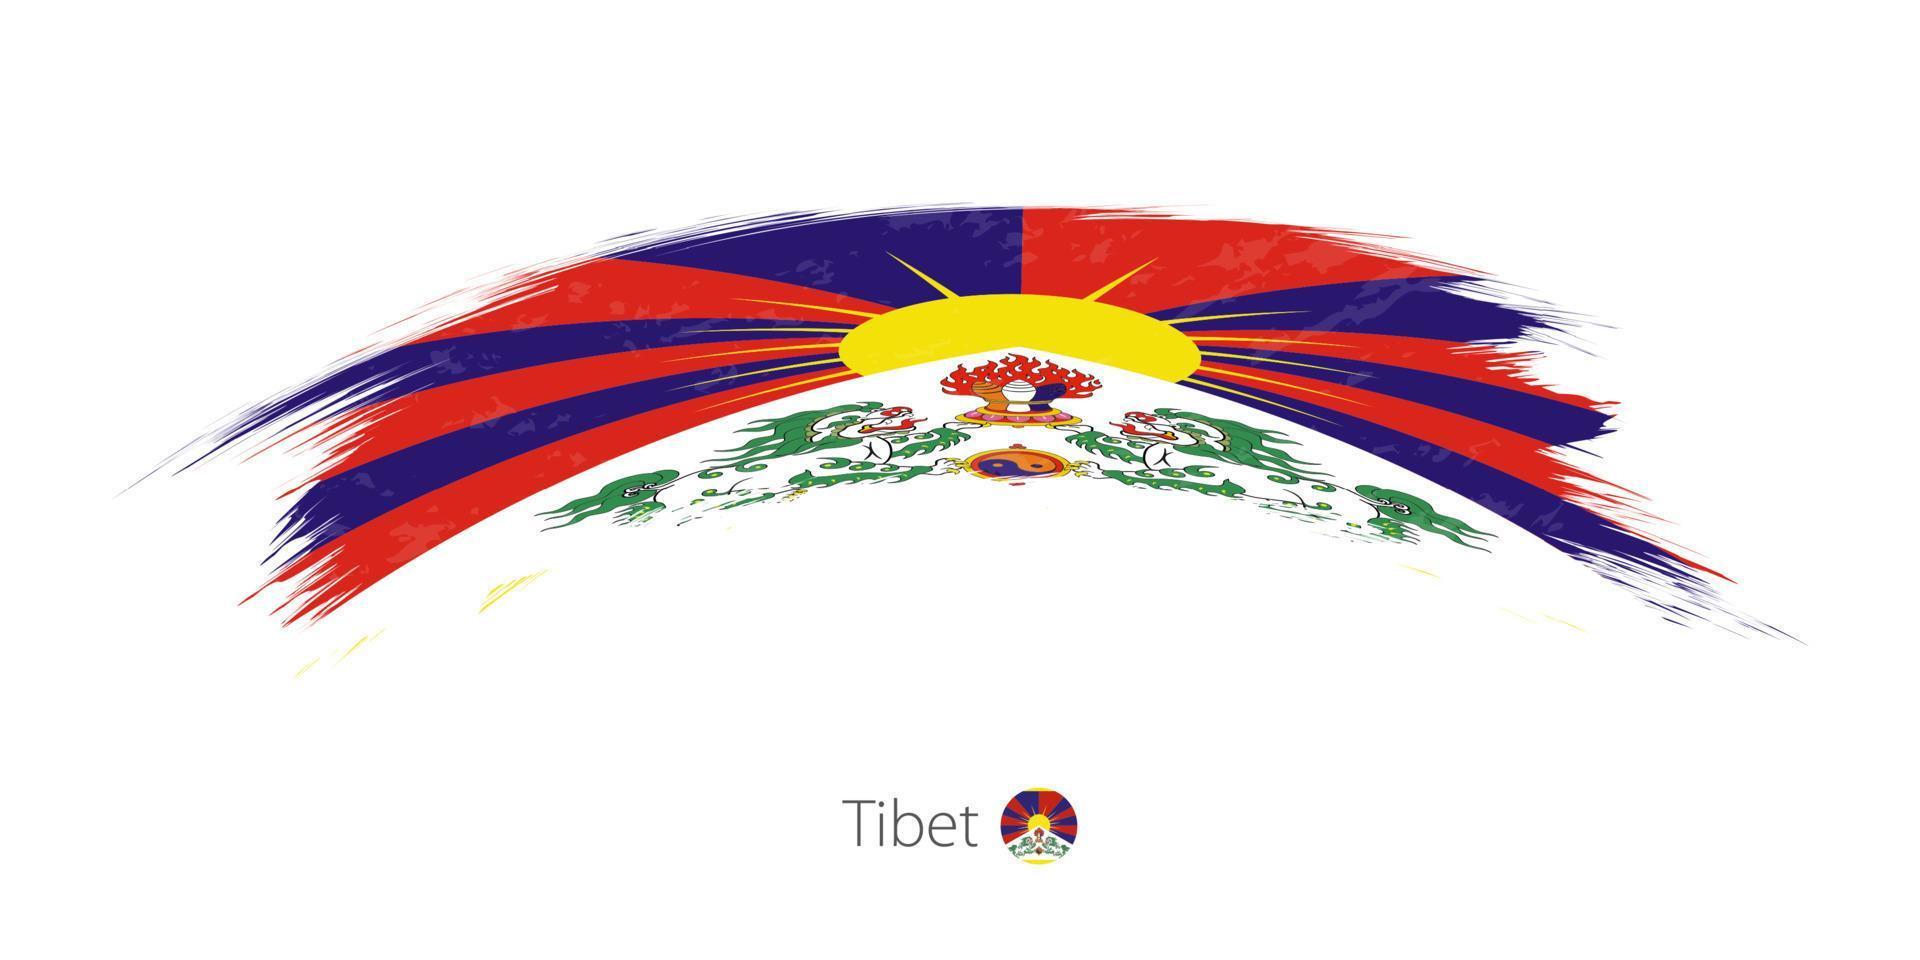 drapeau du tibet en coup de pinceau grunge arrondi. vecteur